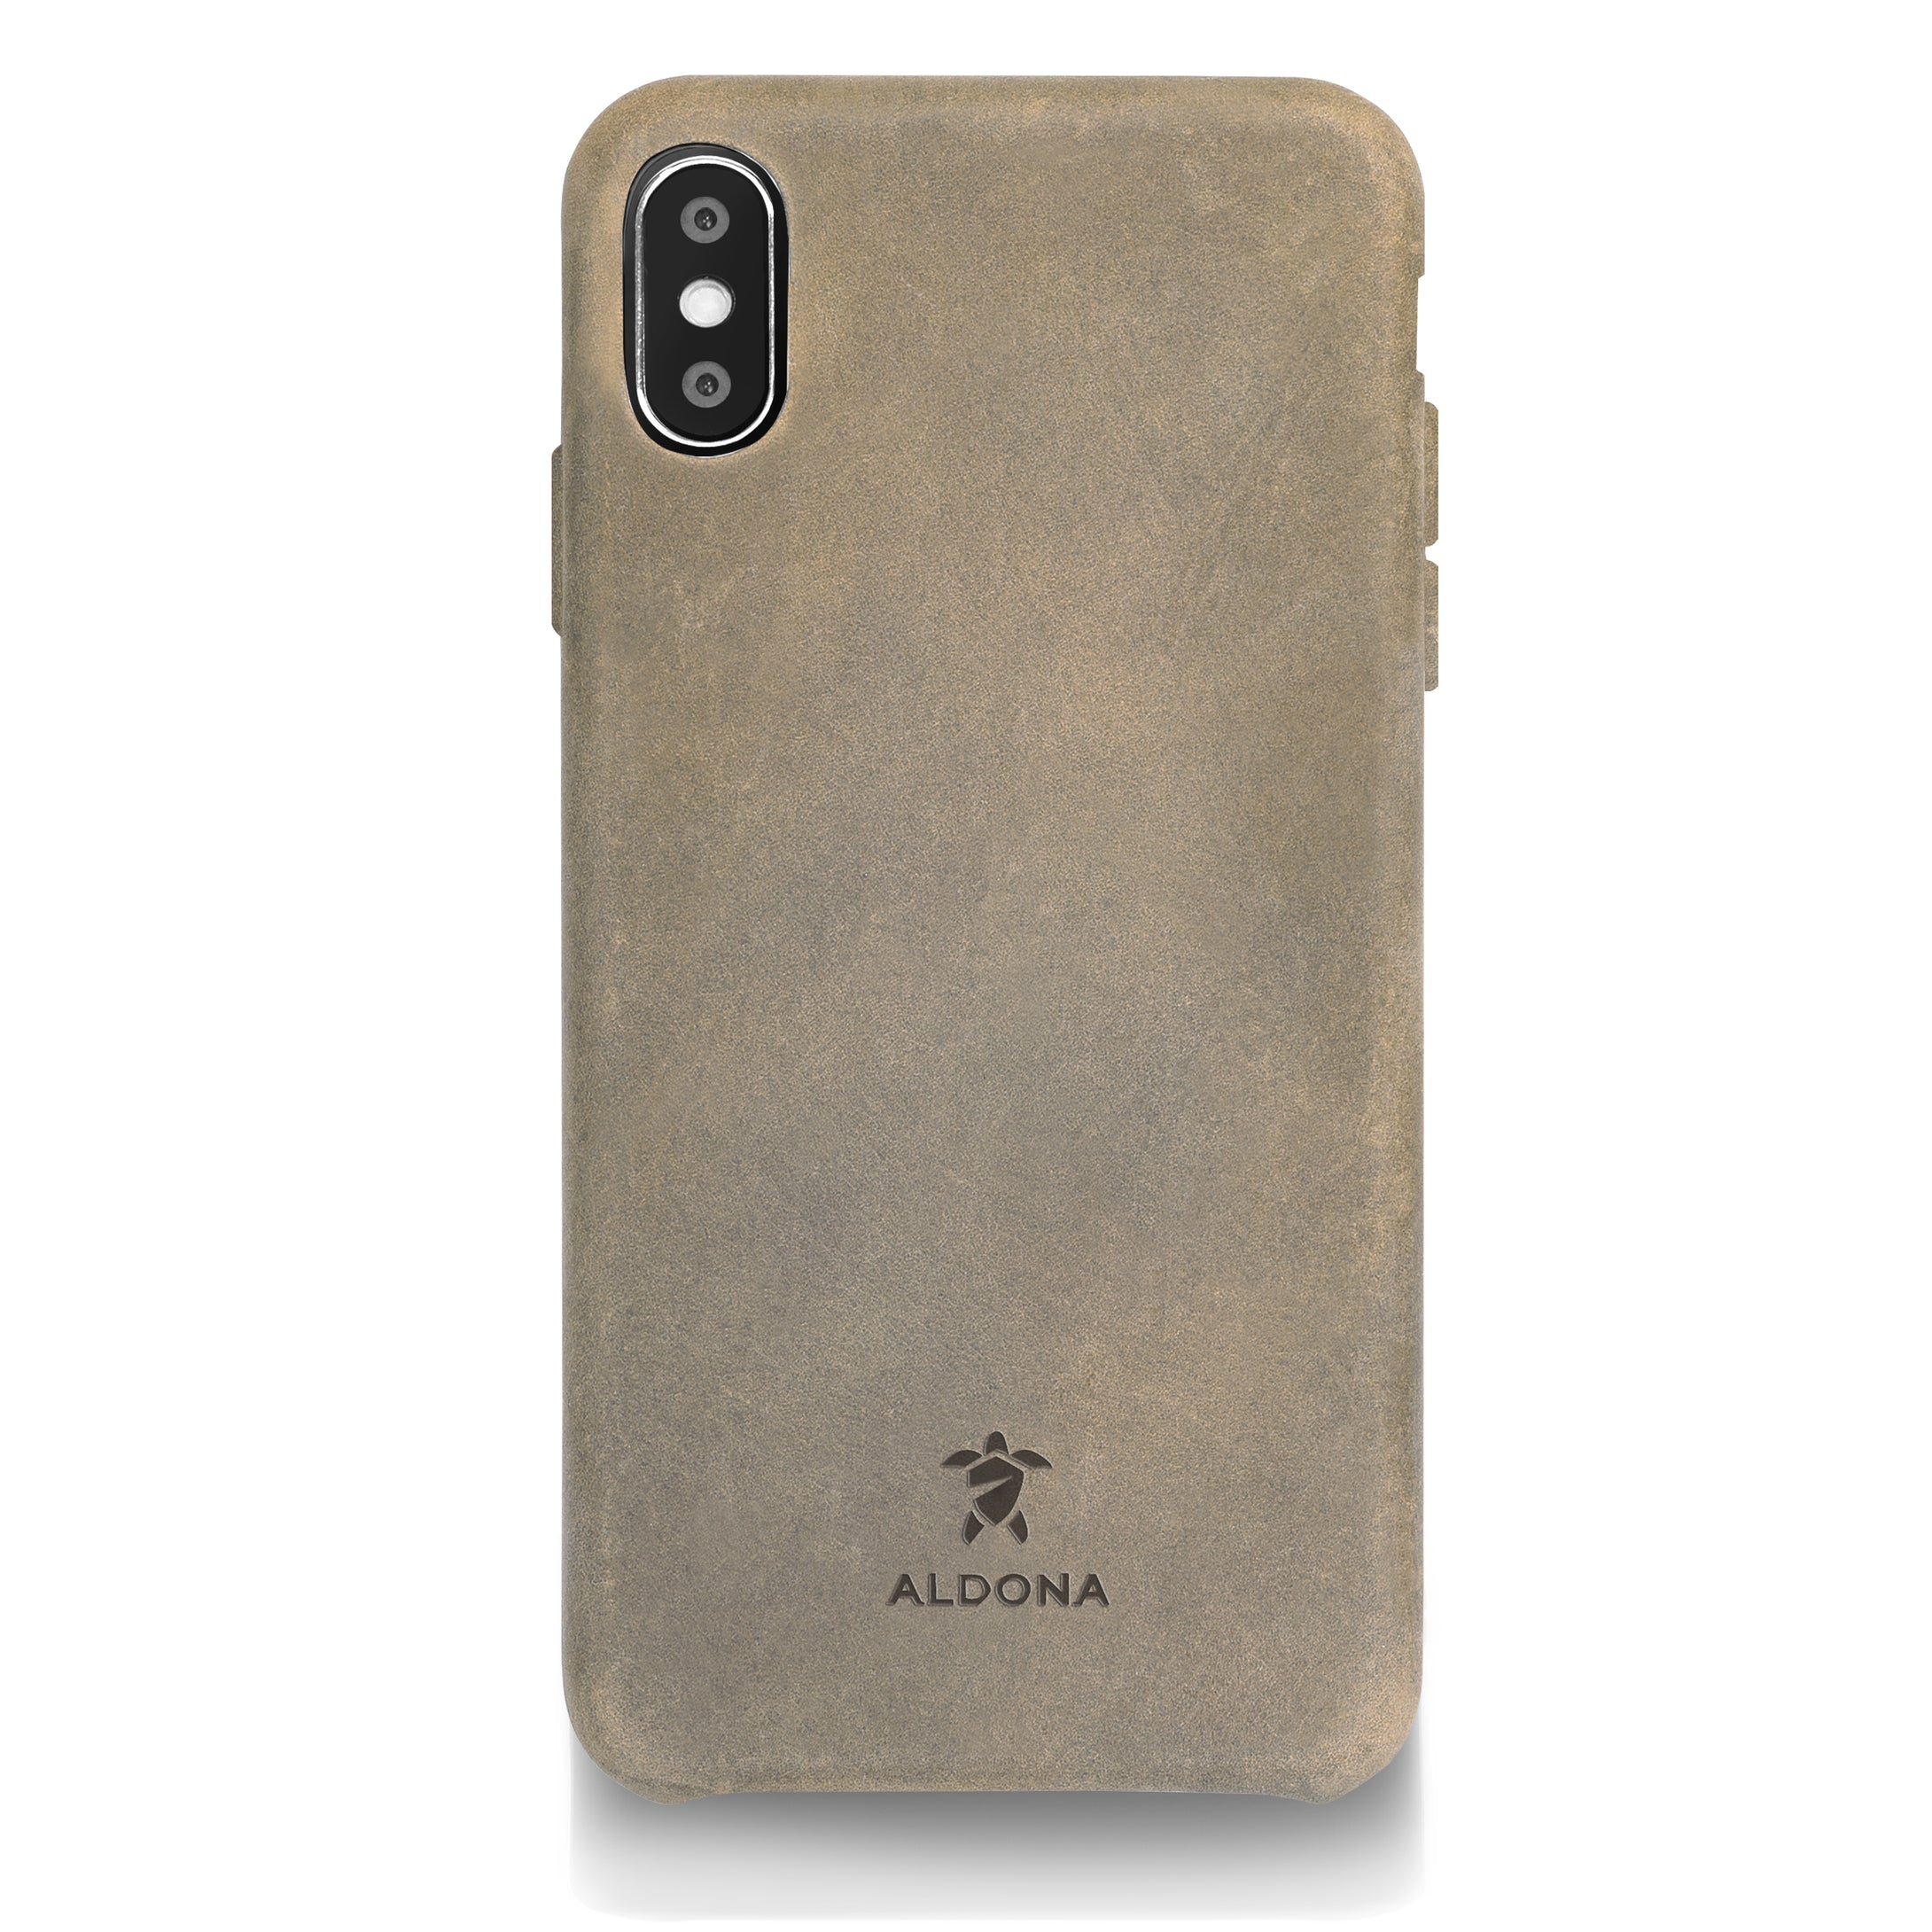 Kalon Leather iPhone XS / X Snap Case - Burnt Tobacco Colour